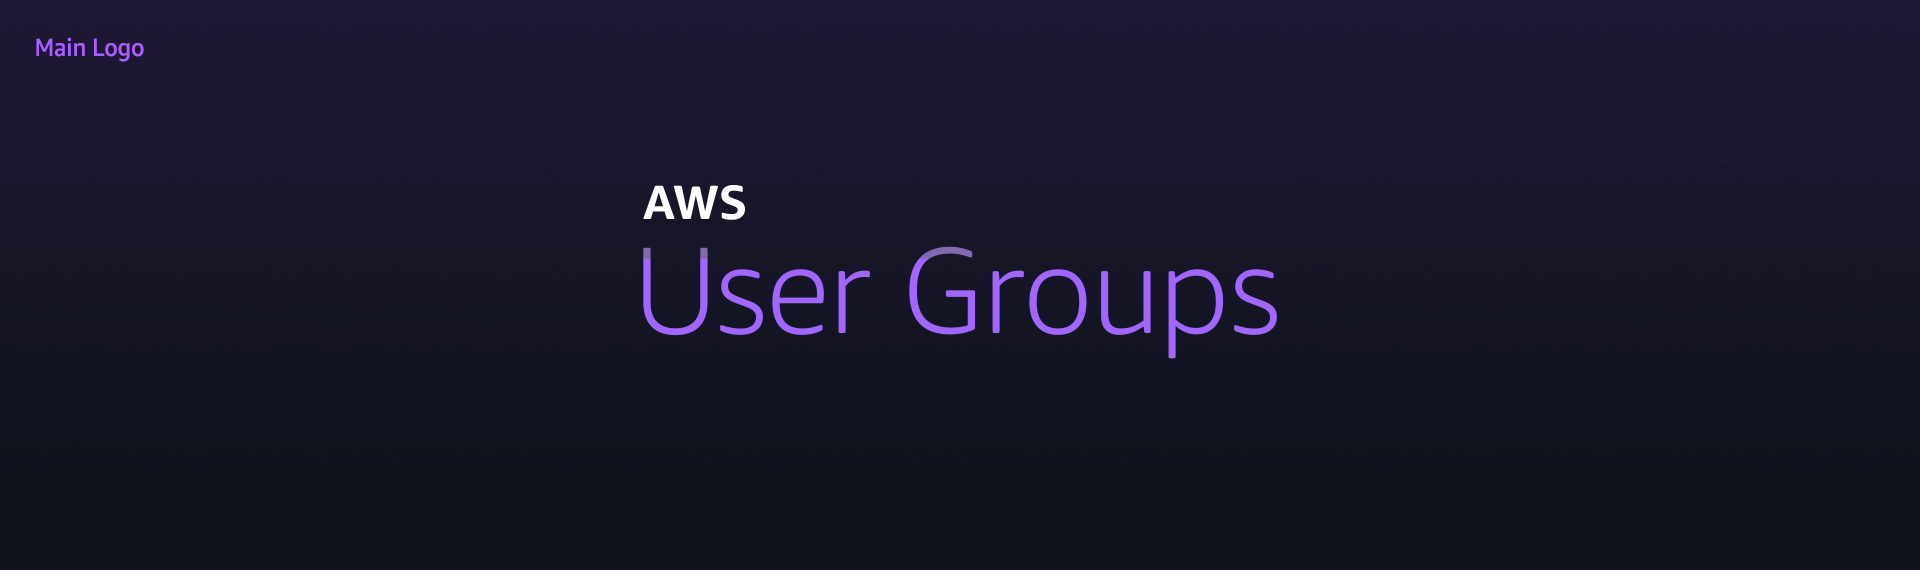 aws-usergroups-logos